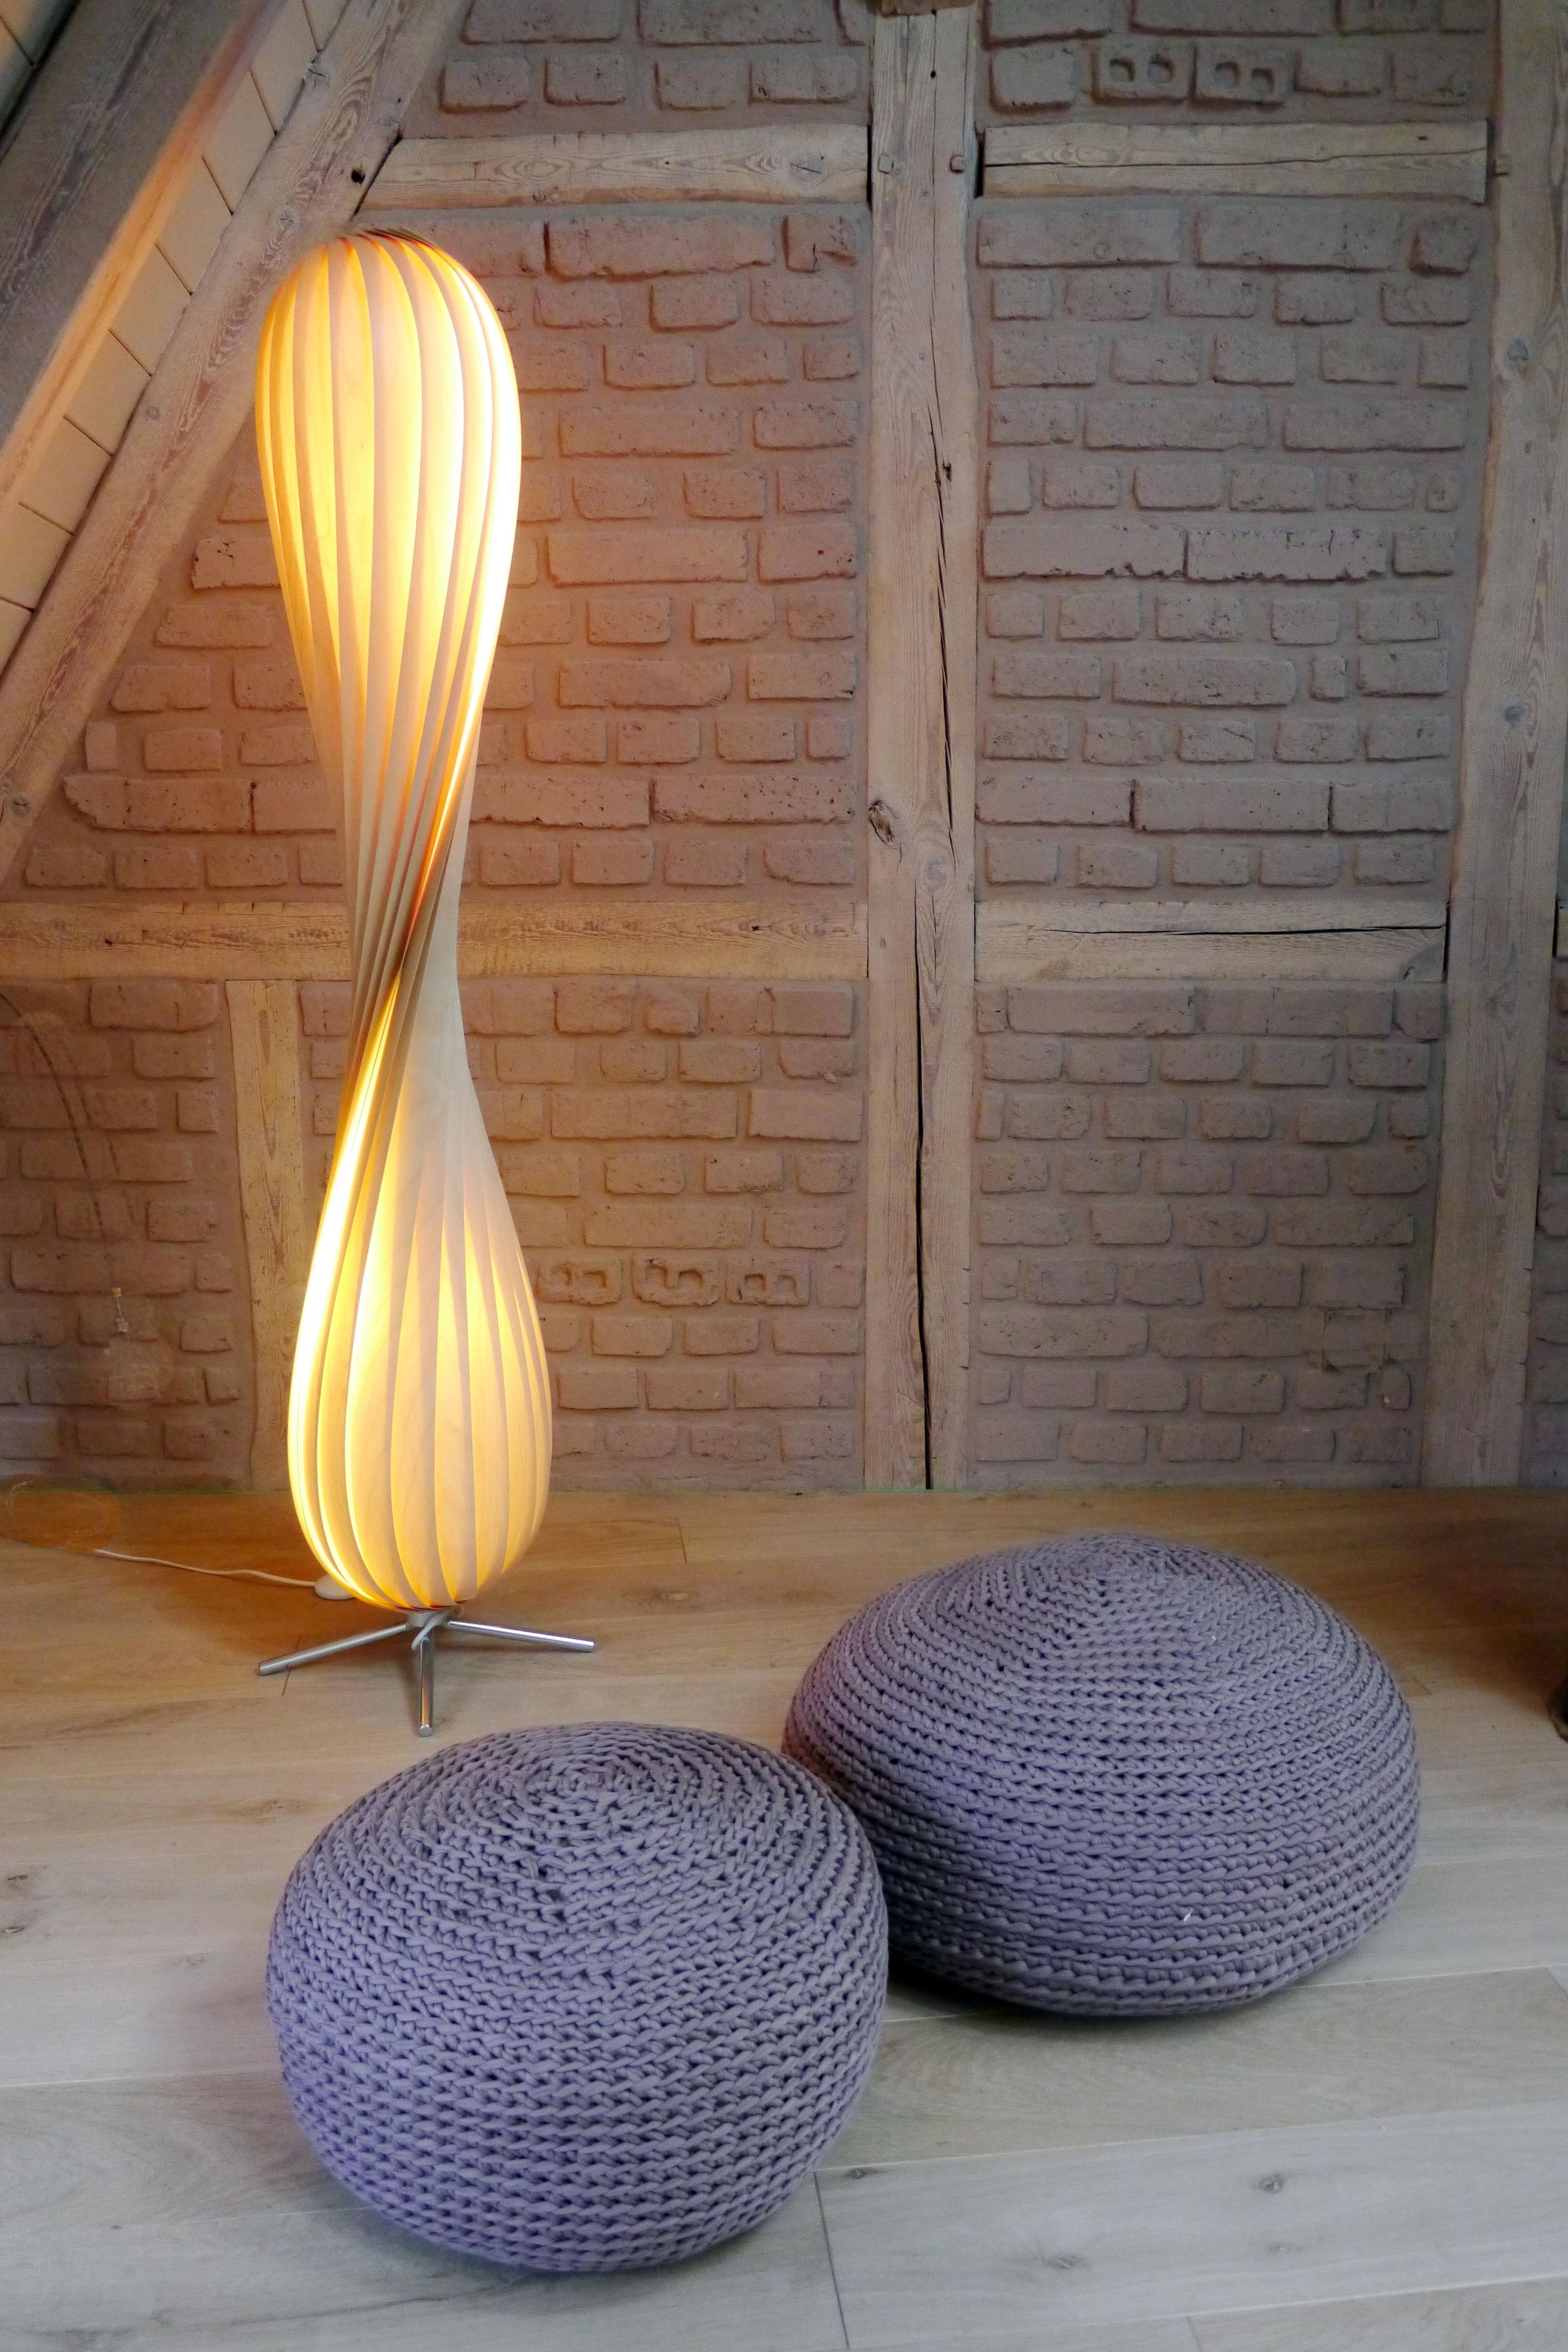 Stehleuchte aus Holzfurnier in gemütlicher Sitzecke #dachboden #stehlampe #sitzecke #nordicstyle ©HolzDesignPur